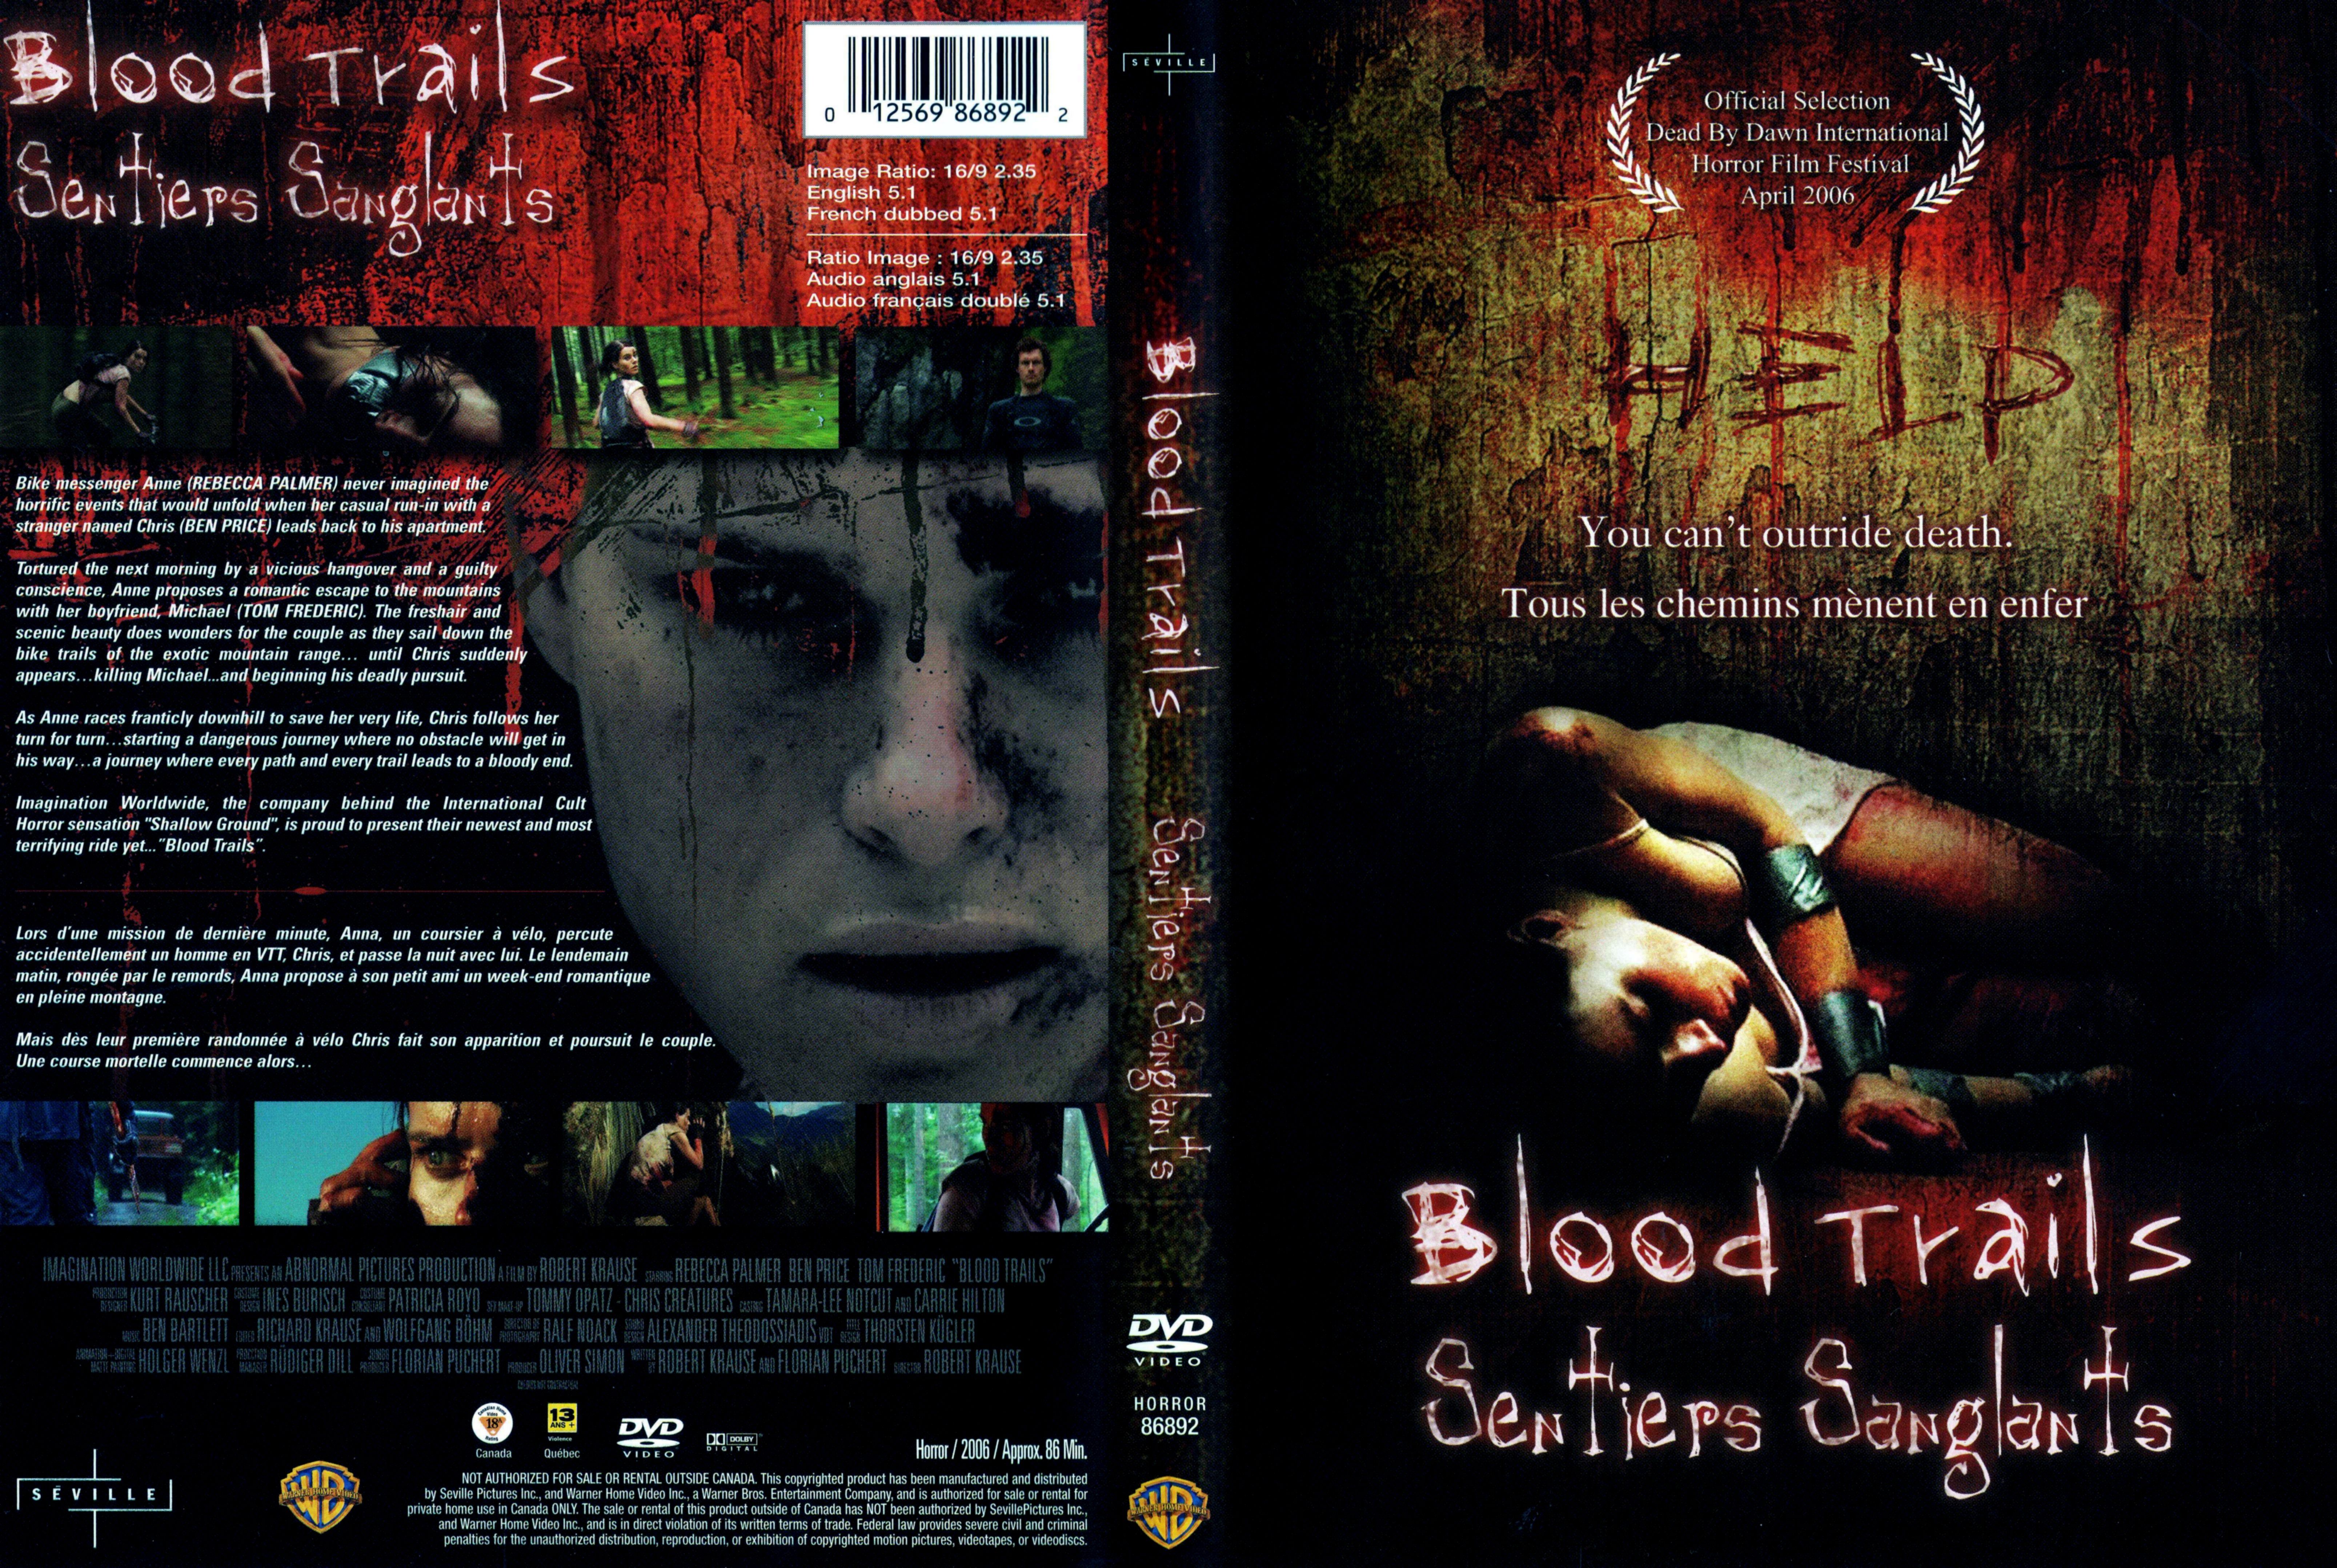 Jaquette DVD Blood trails